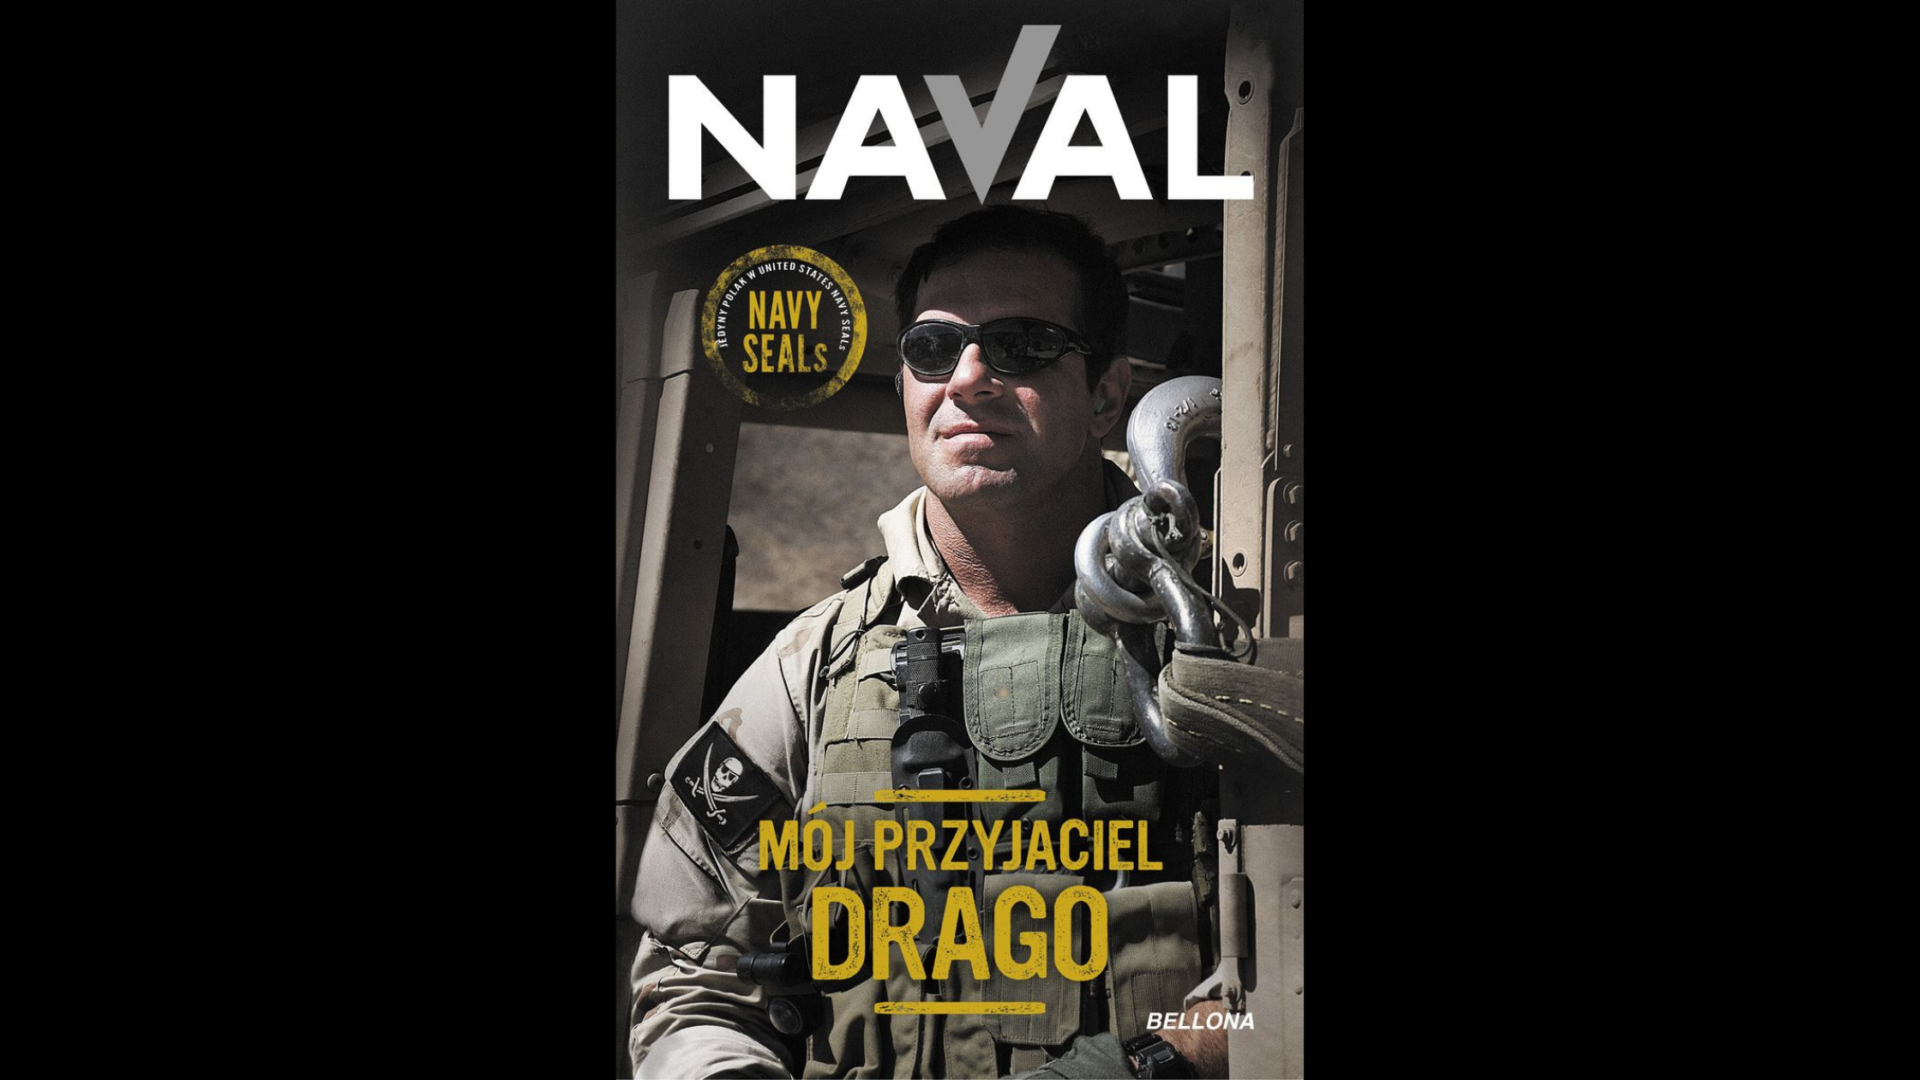 Recenzja książki “Mój przyjaciel Drago” - Naval i Drago - Wydawnictwo Bellona